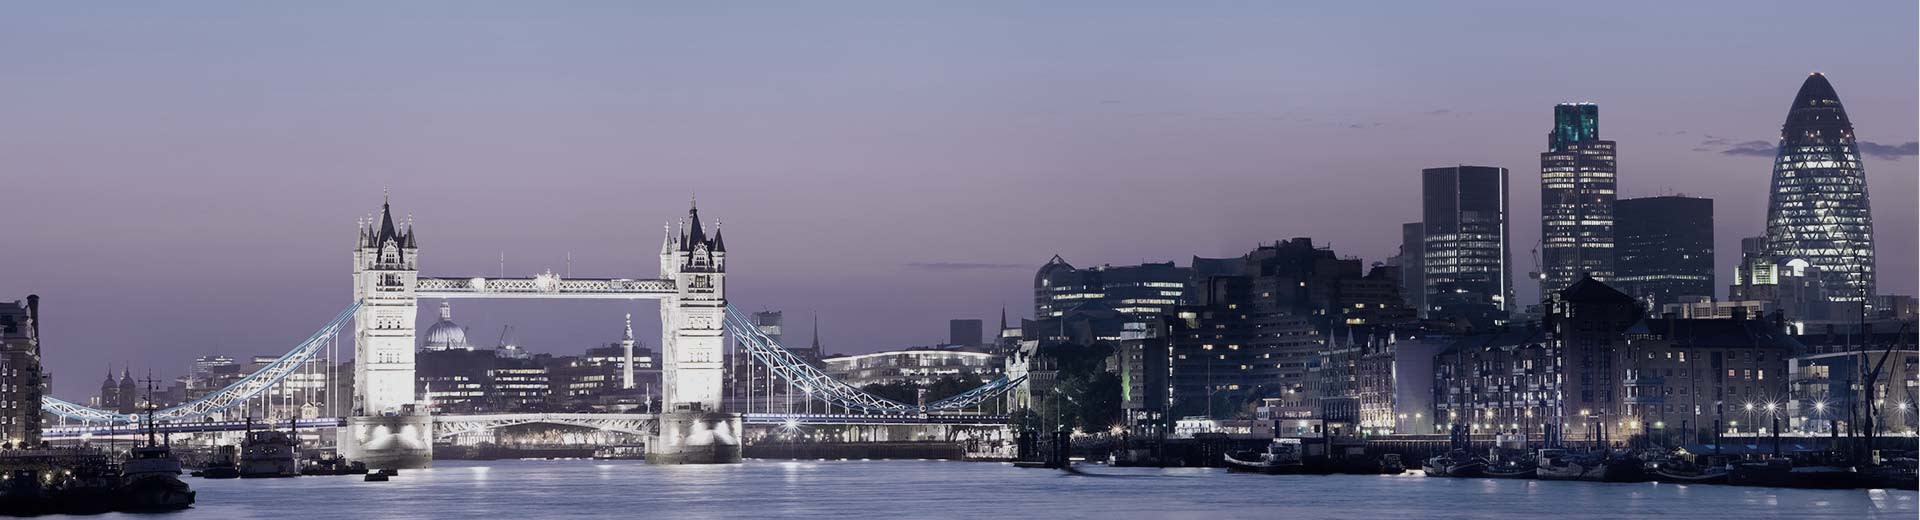 夜のテムズ川に架かるロンドン橋が空を照らす。